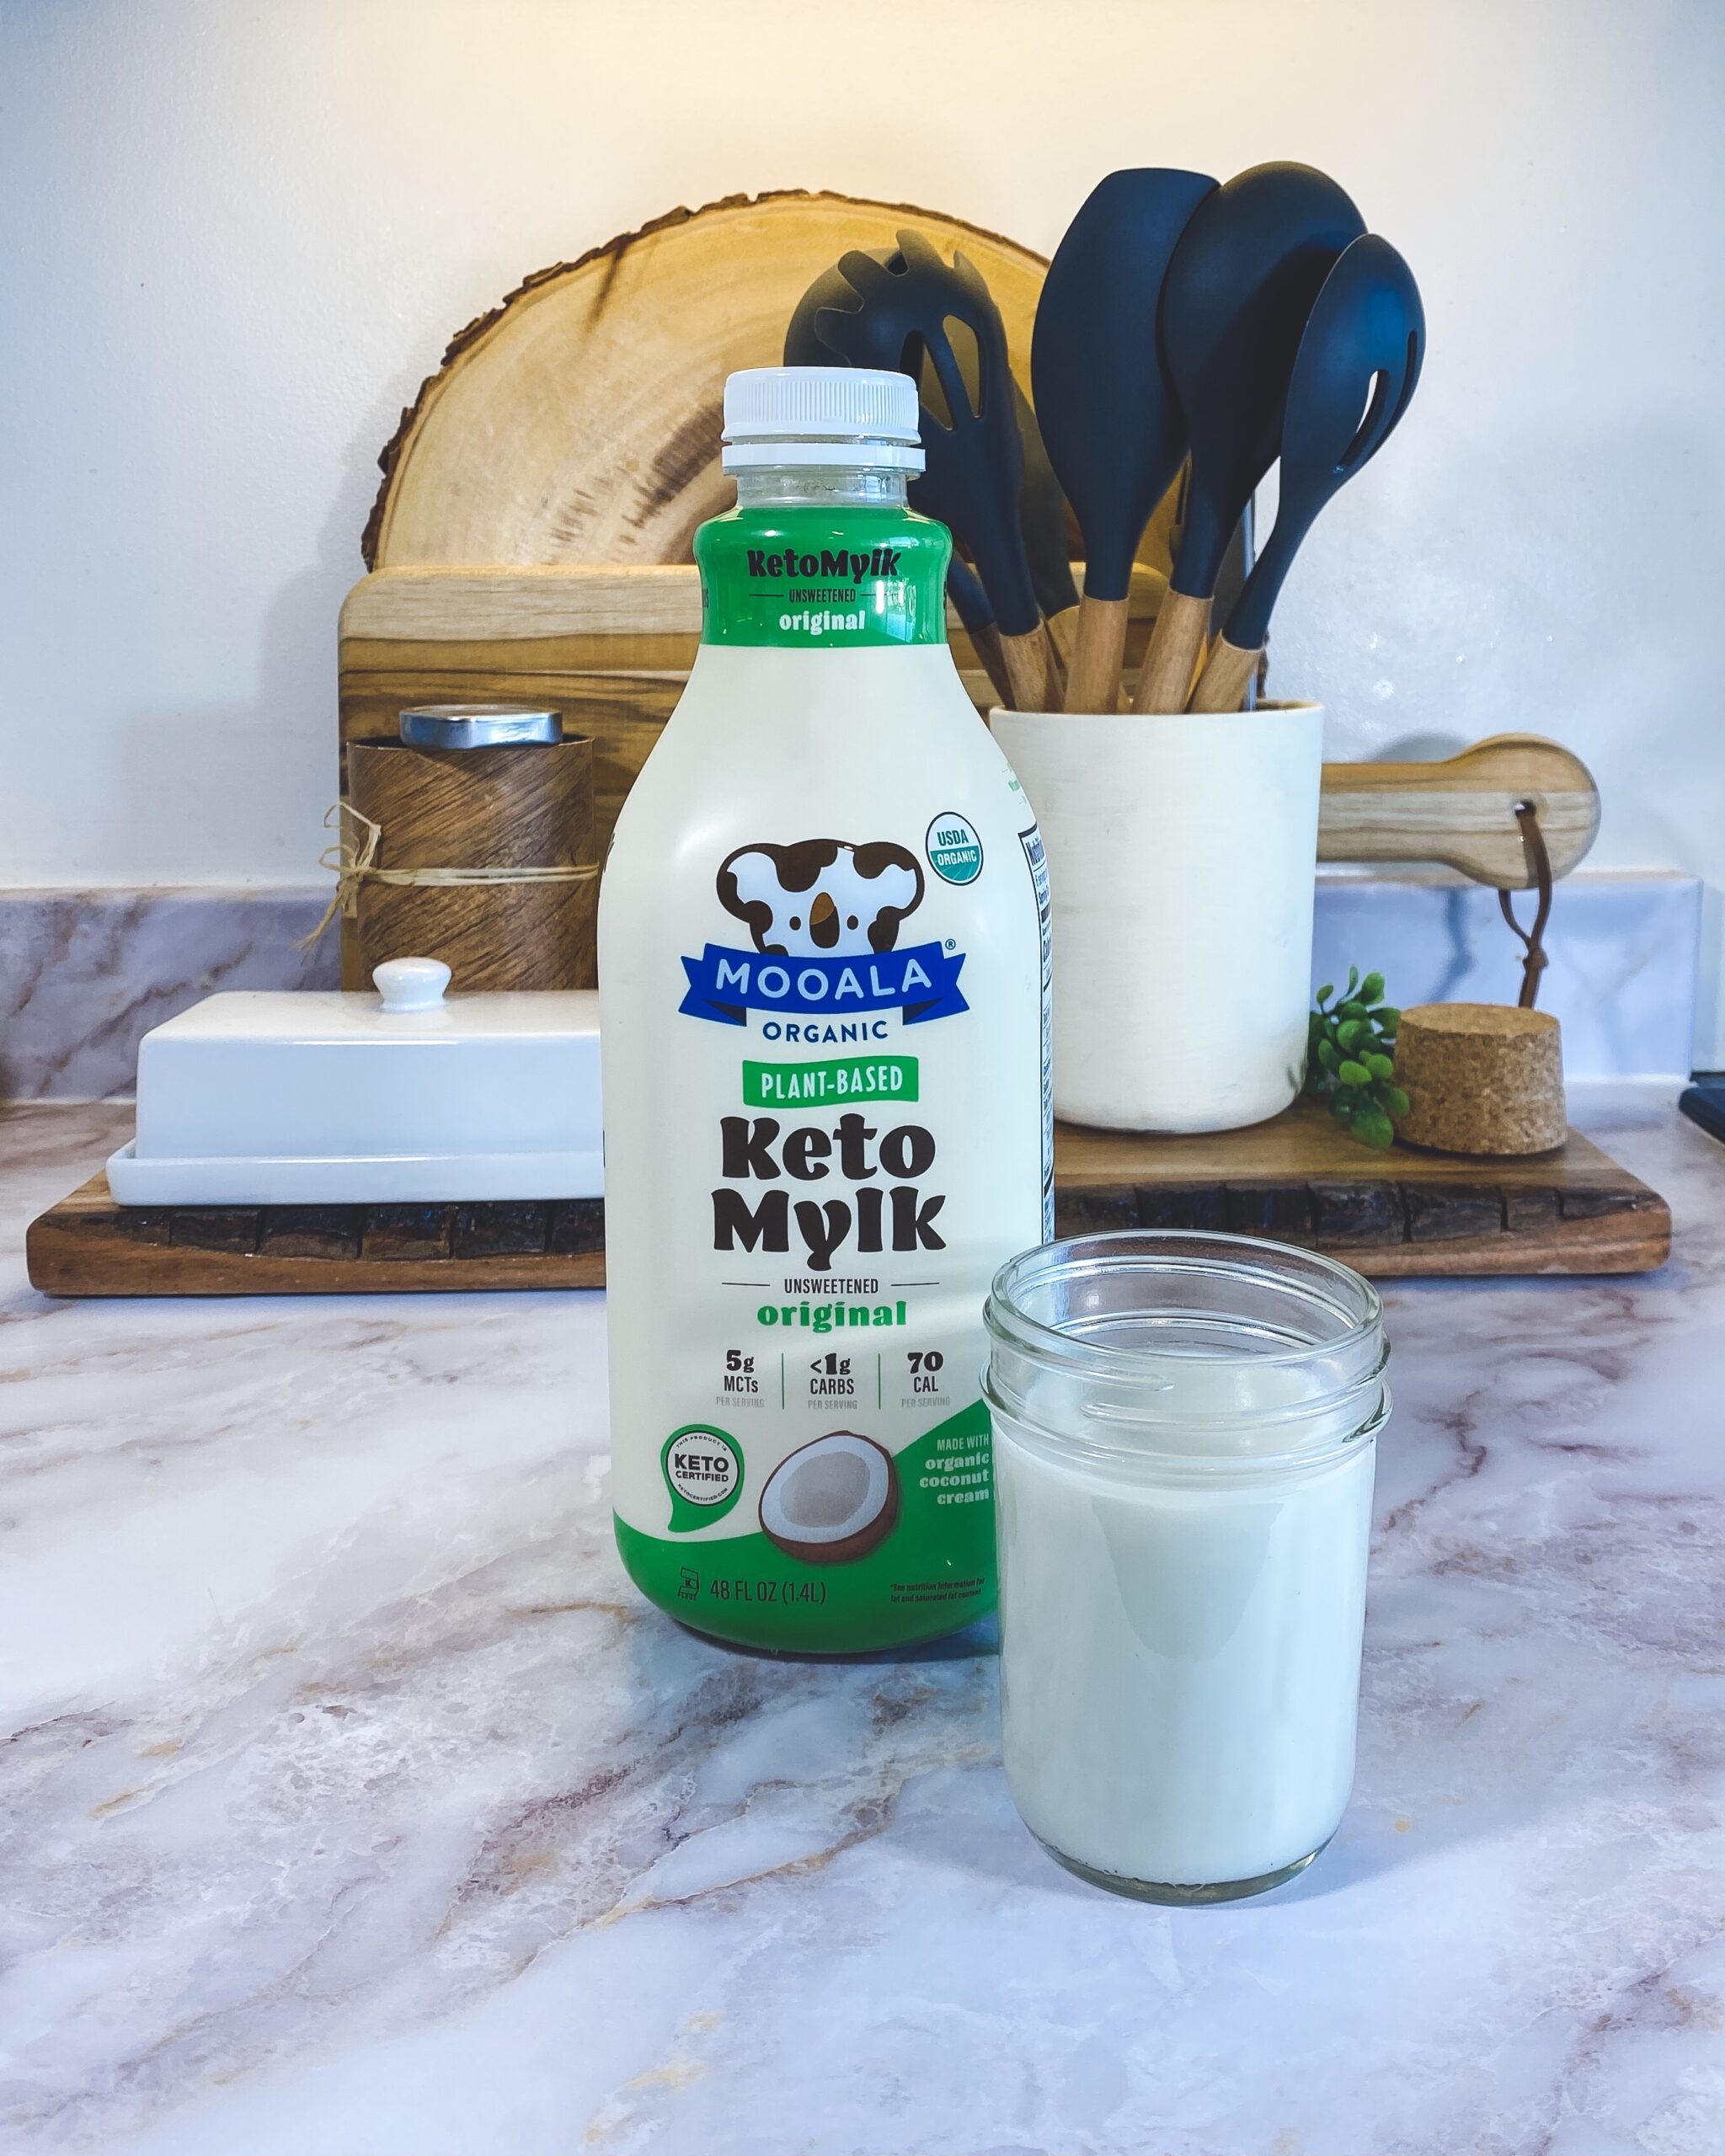 Mooala Keto Mylk Original Organic Plant Based Milk